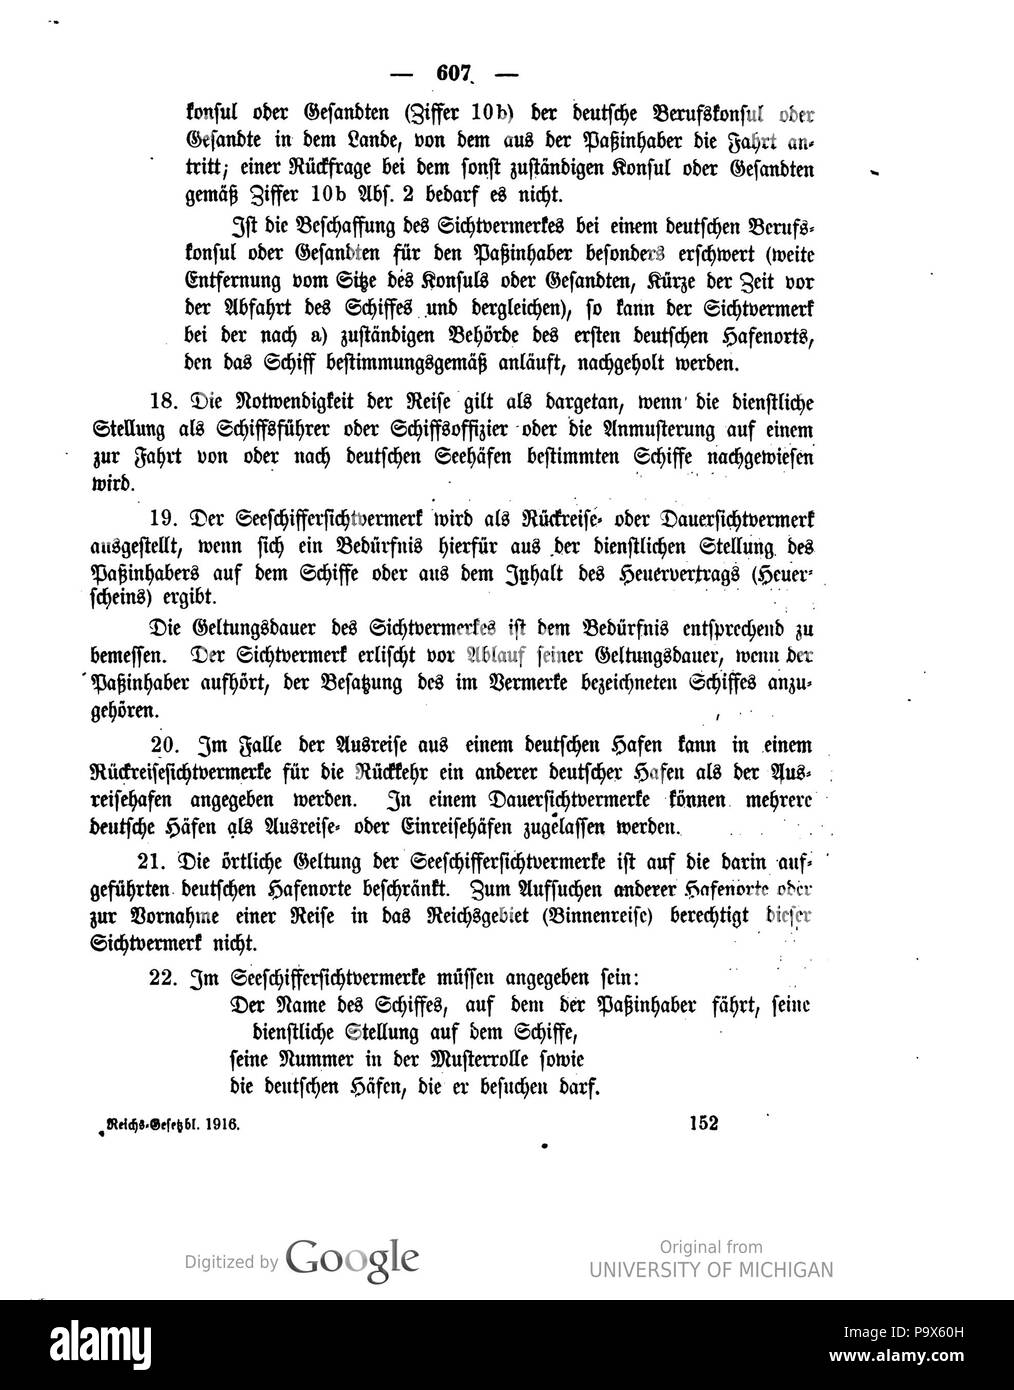 466 Deutsches Reichsgesetzblatt 1916 143 0607 Stock Photo